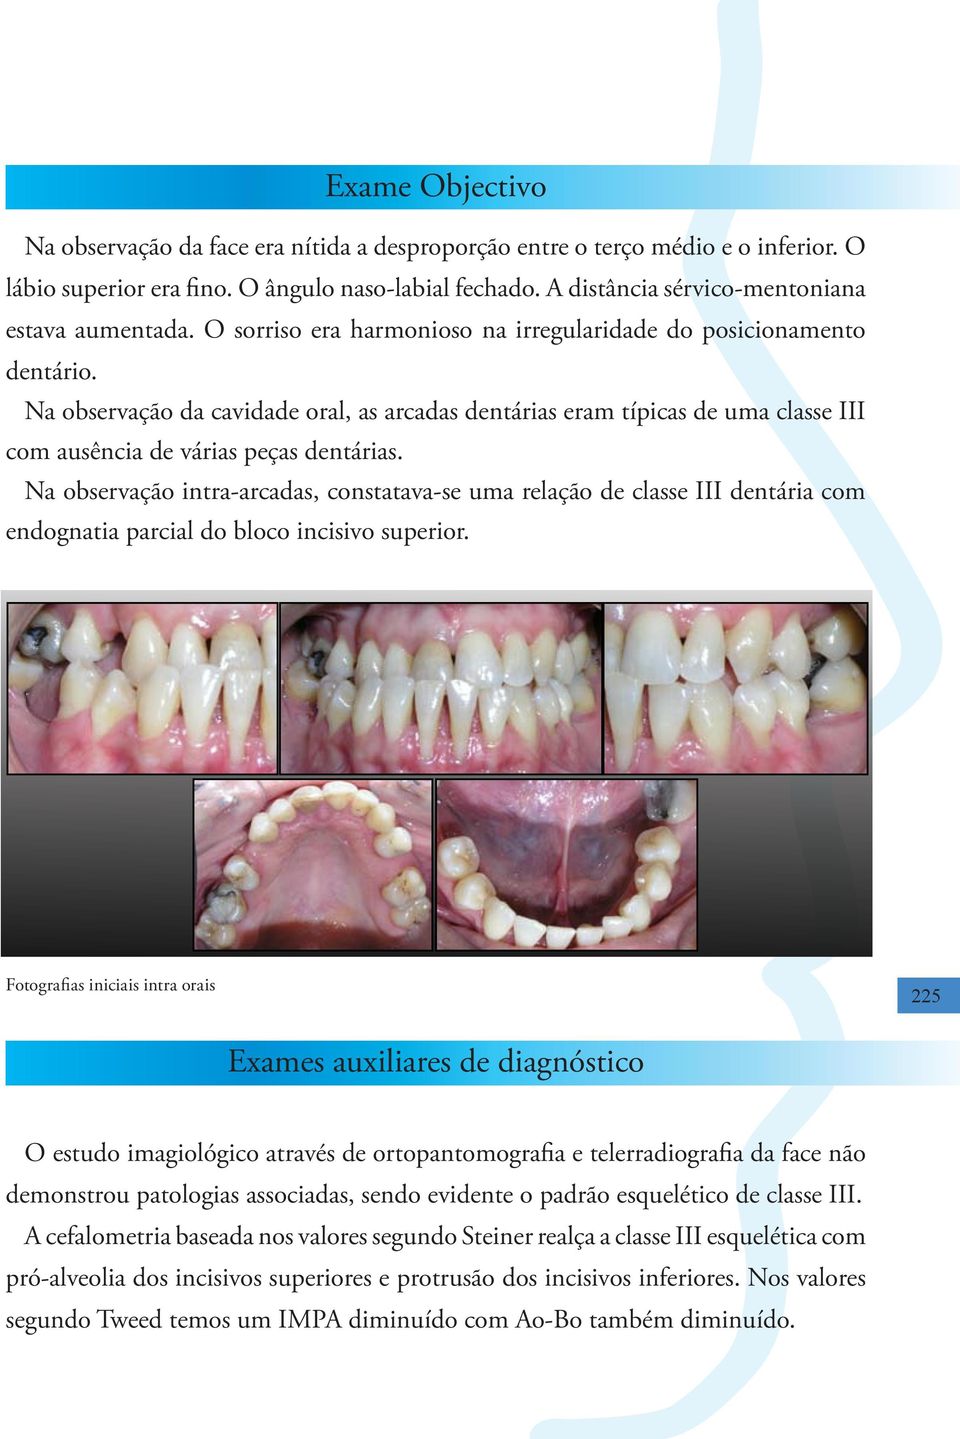 Na observação da cavidade oral, as arcadas dentárias eram típicas de uma classe III com ausência de várias peças dentárias.